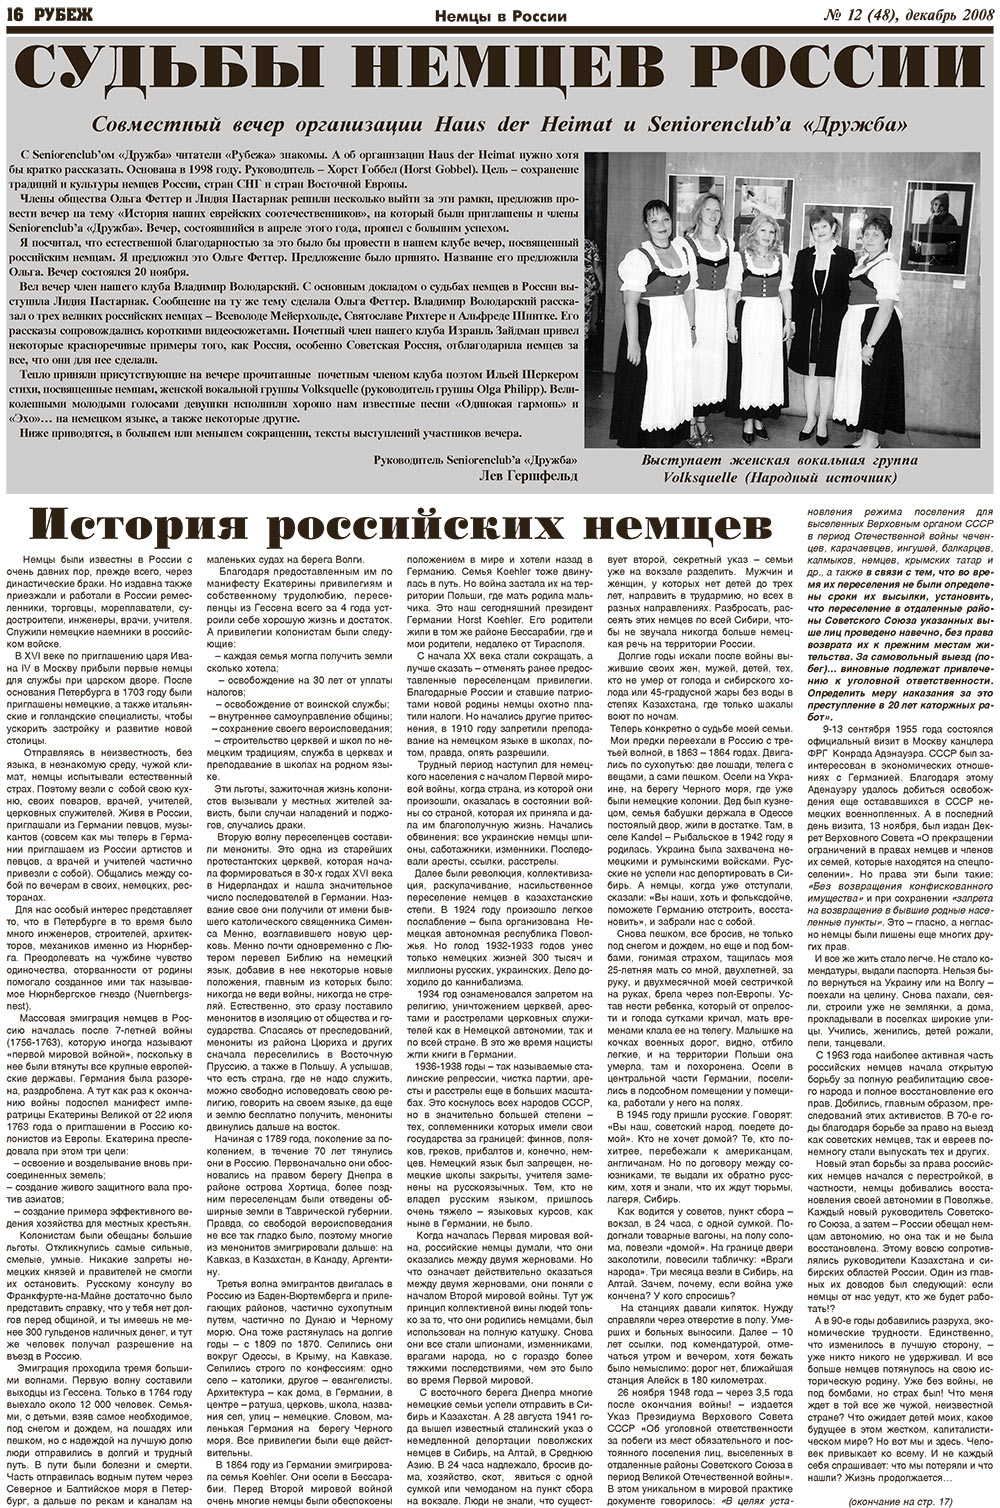 Рубеж (газета). 2008 год, номер 12, стр. 16